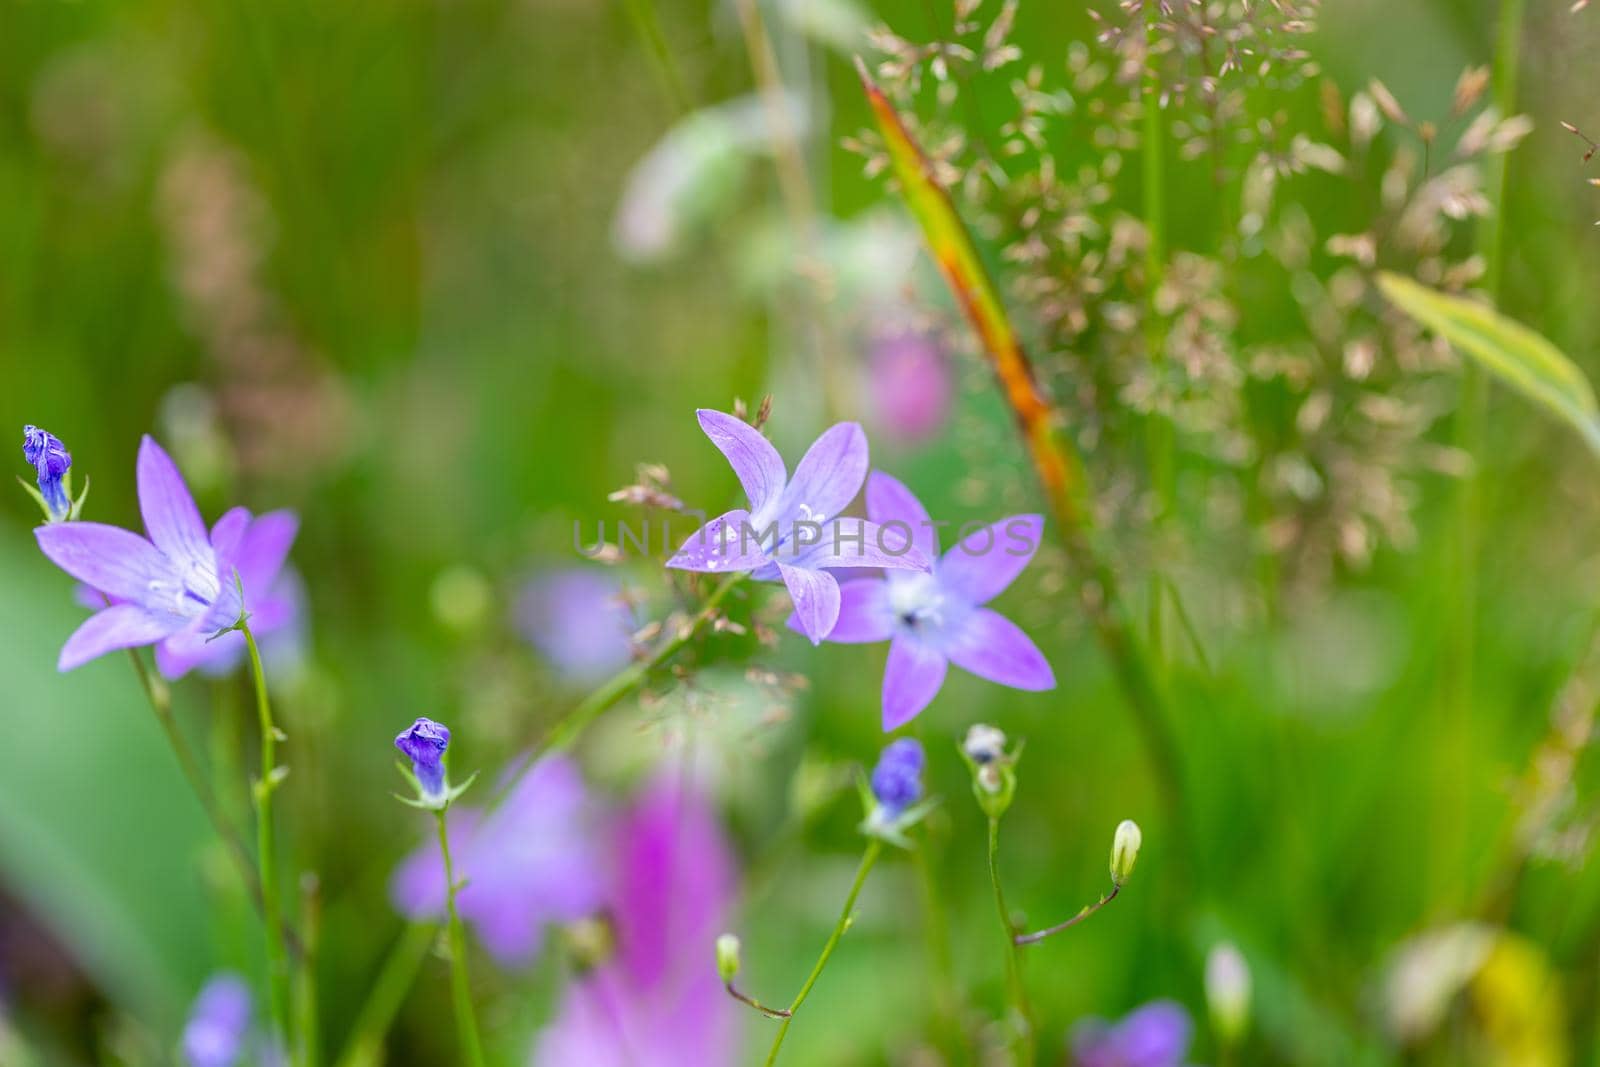 flower campanula patula, wild flowering plant in summer meadow, beautiful purple spreading bell-flowers flowers in bloom, Summertime, Europe, Czech Republic